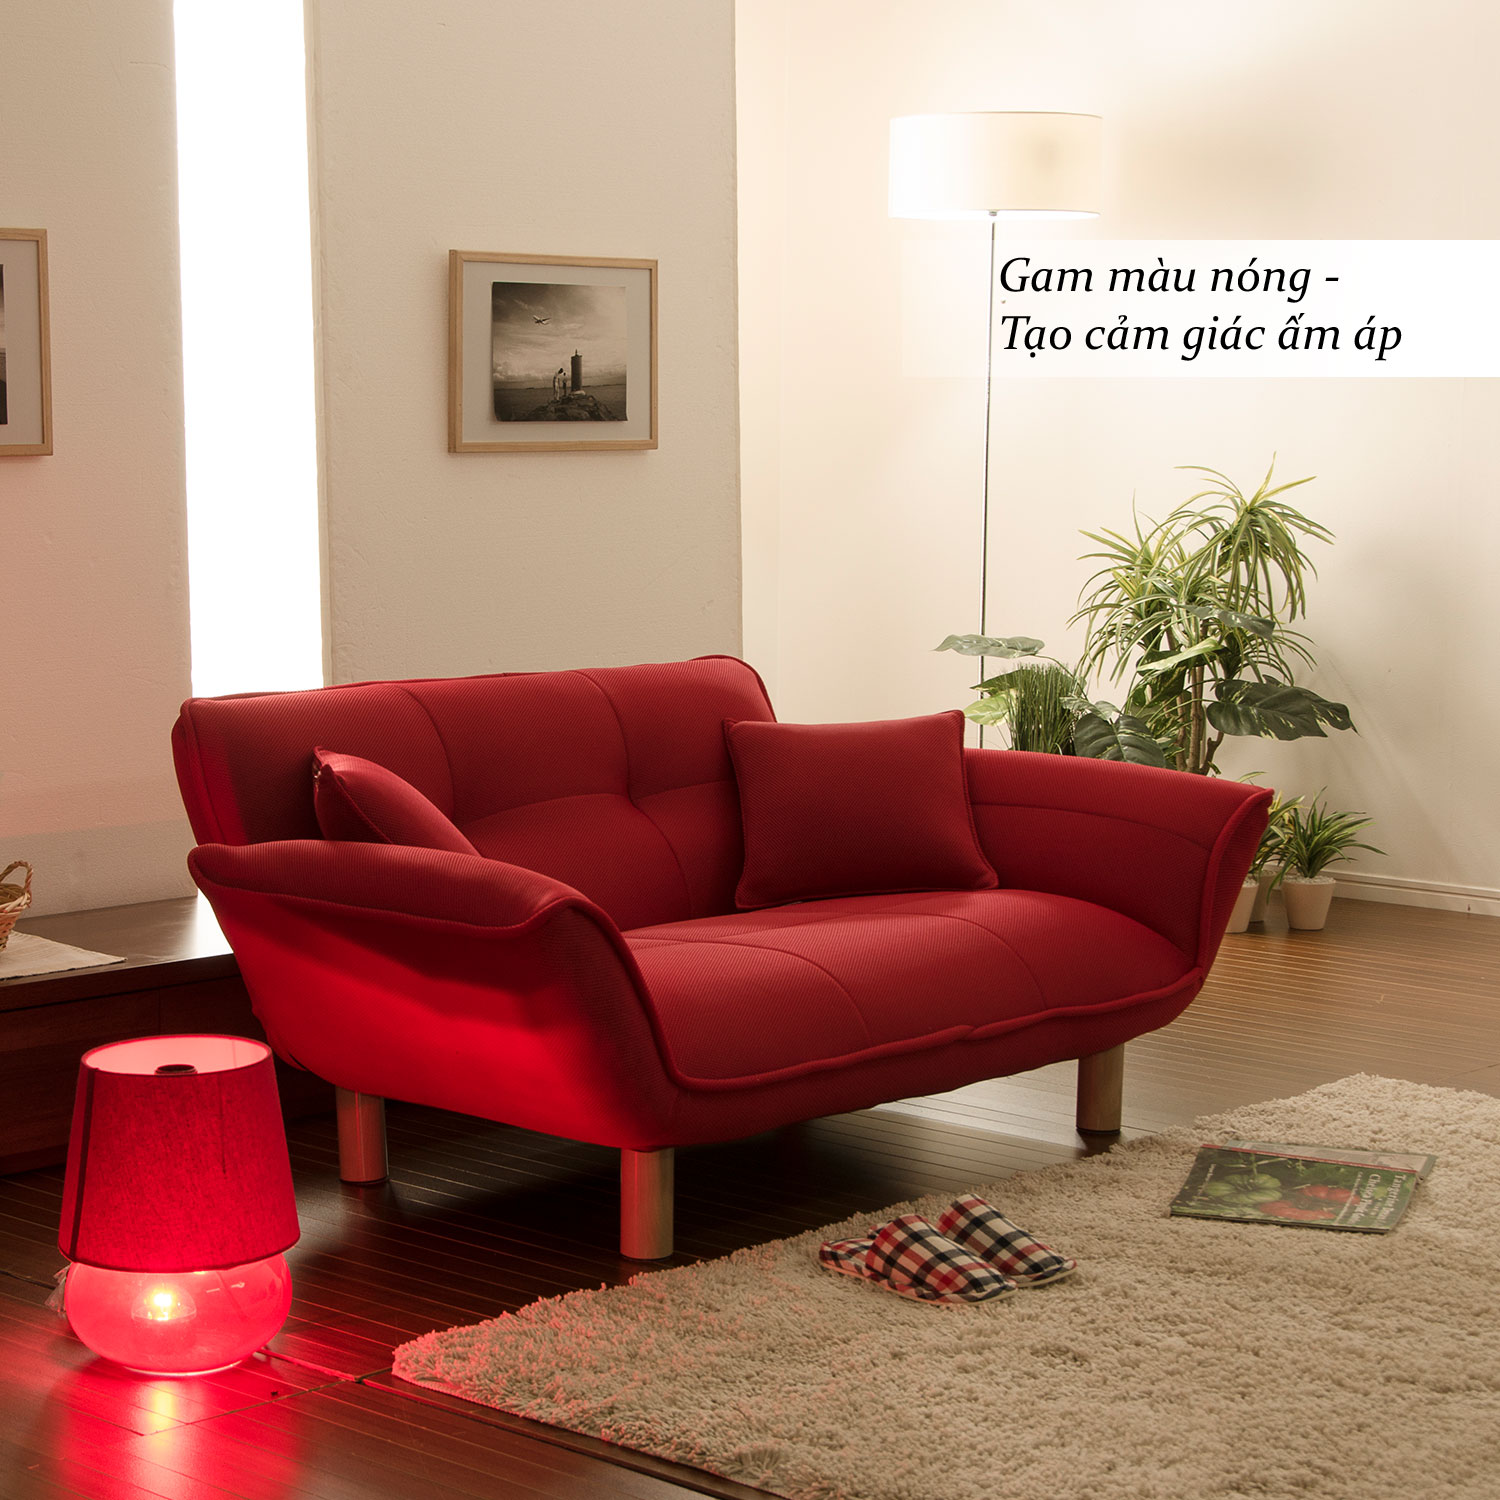 trang trí nội thất mùa đông, trang trí phòng khách mùa đông, sofa thông minh màu đỏ, Cellutane Việt Nam, Nội thất nhật bản